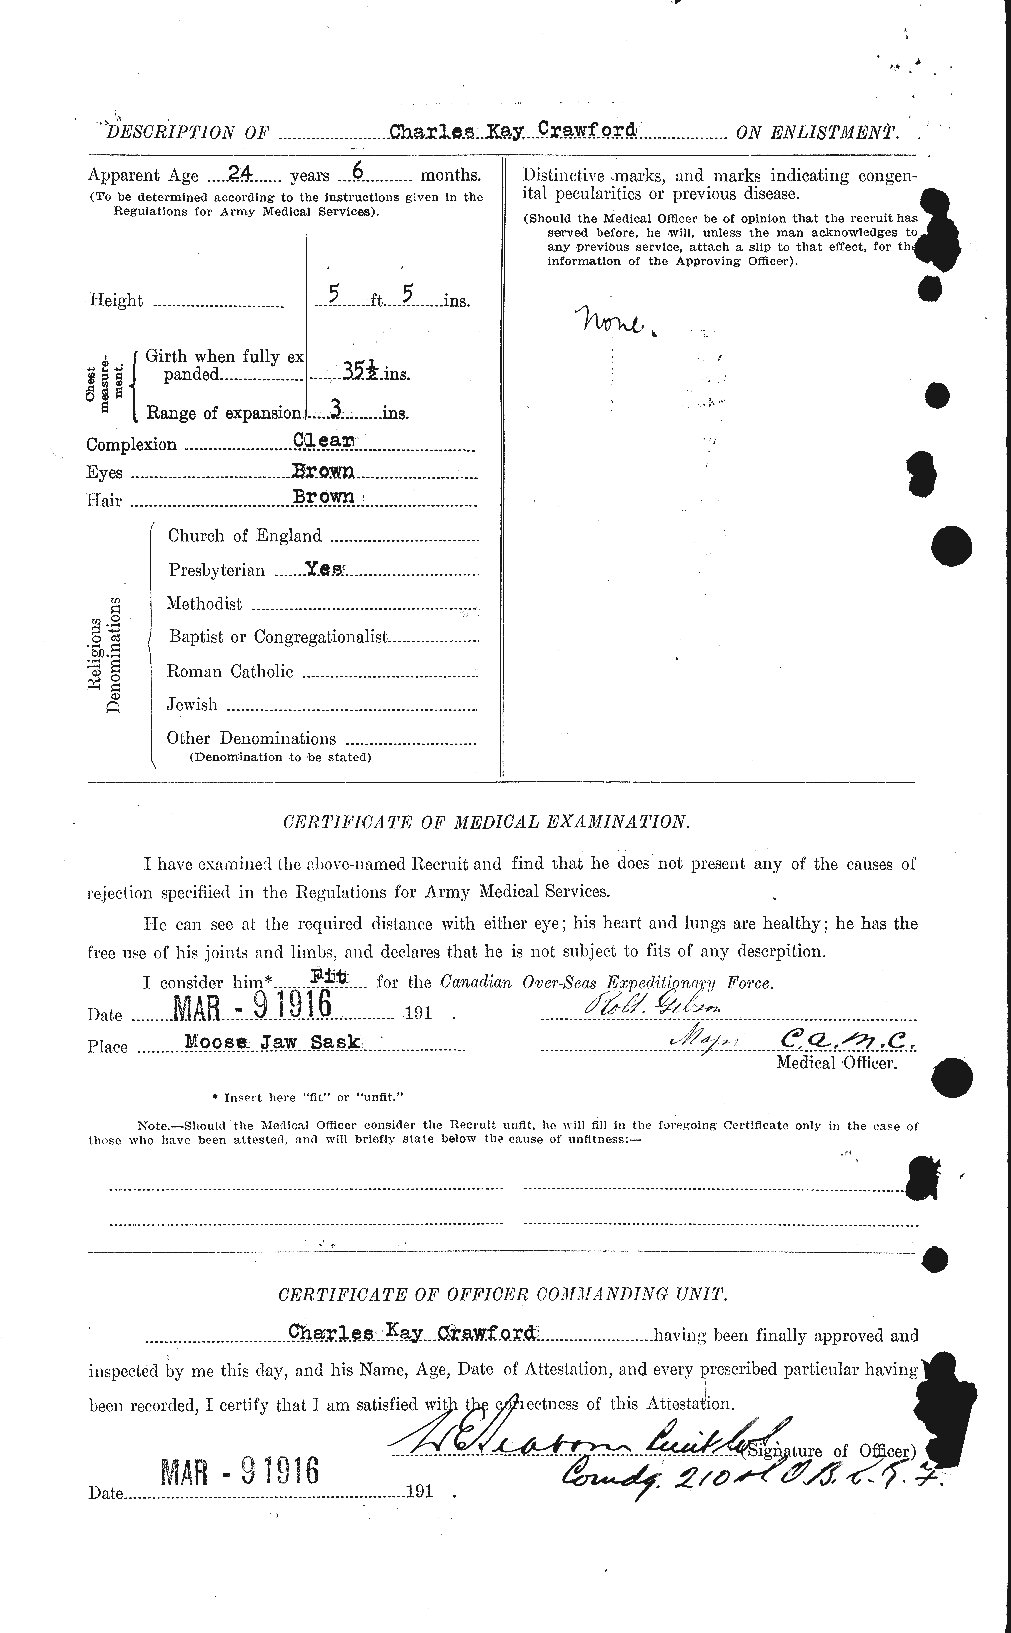 Dossiers du Personnel de la Première Guerre mondiale - CEC 060838b